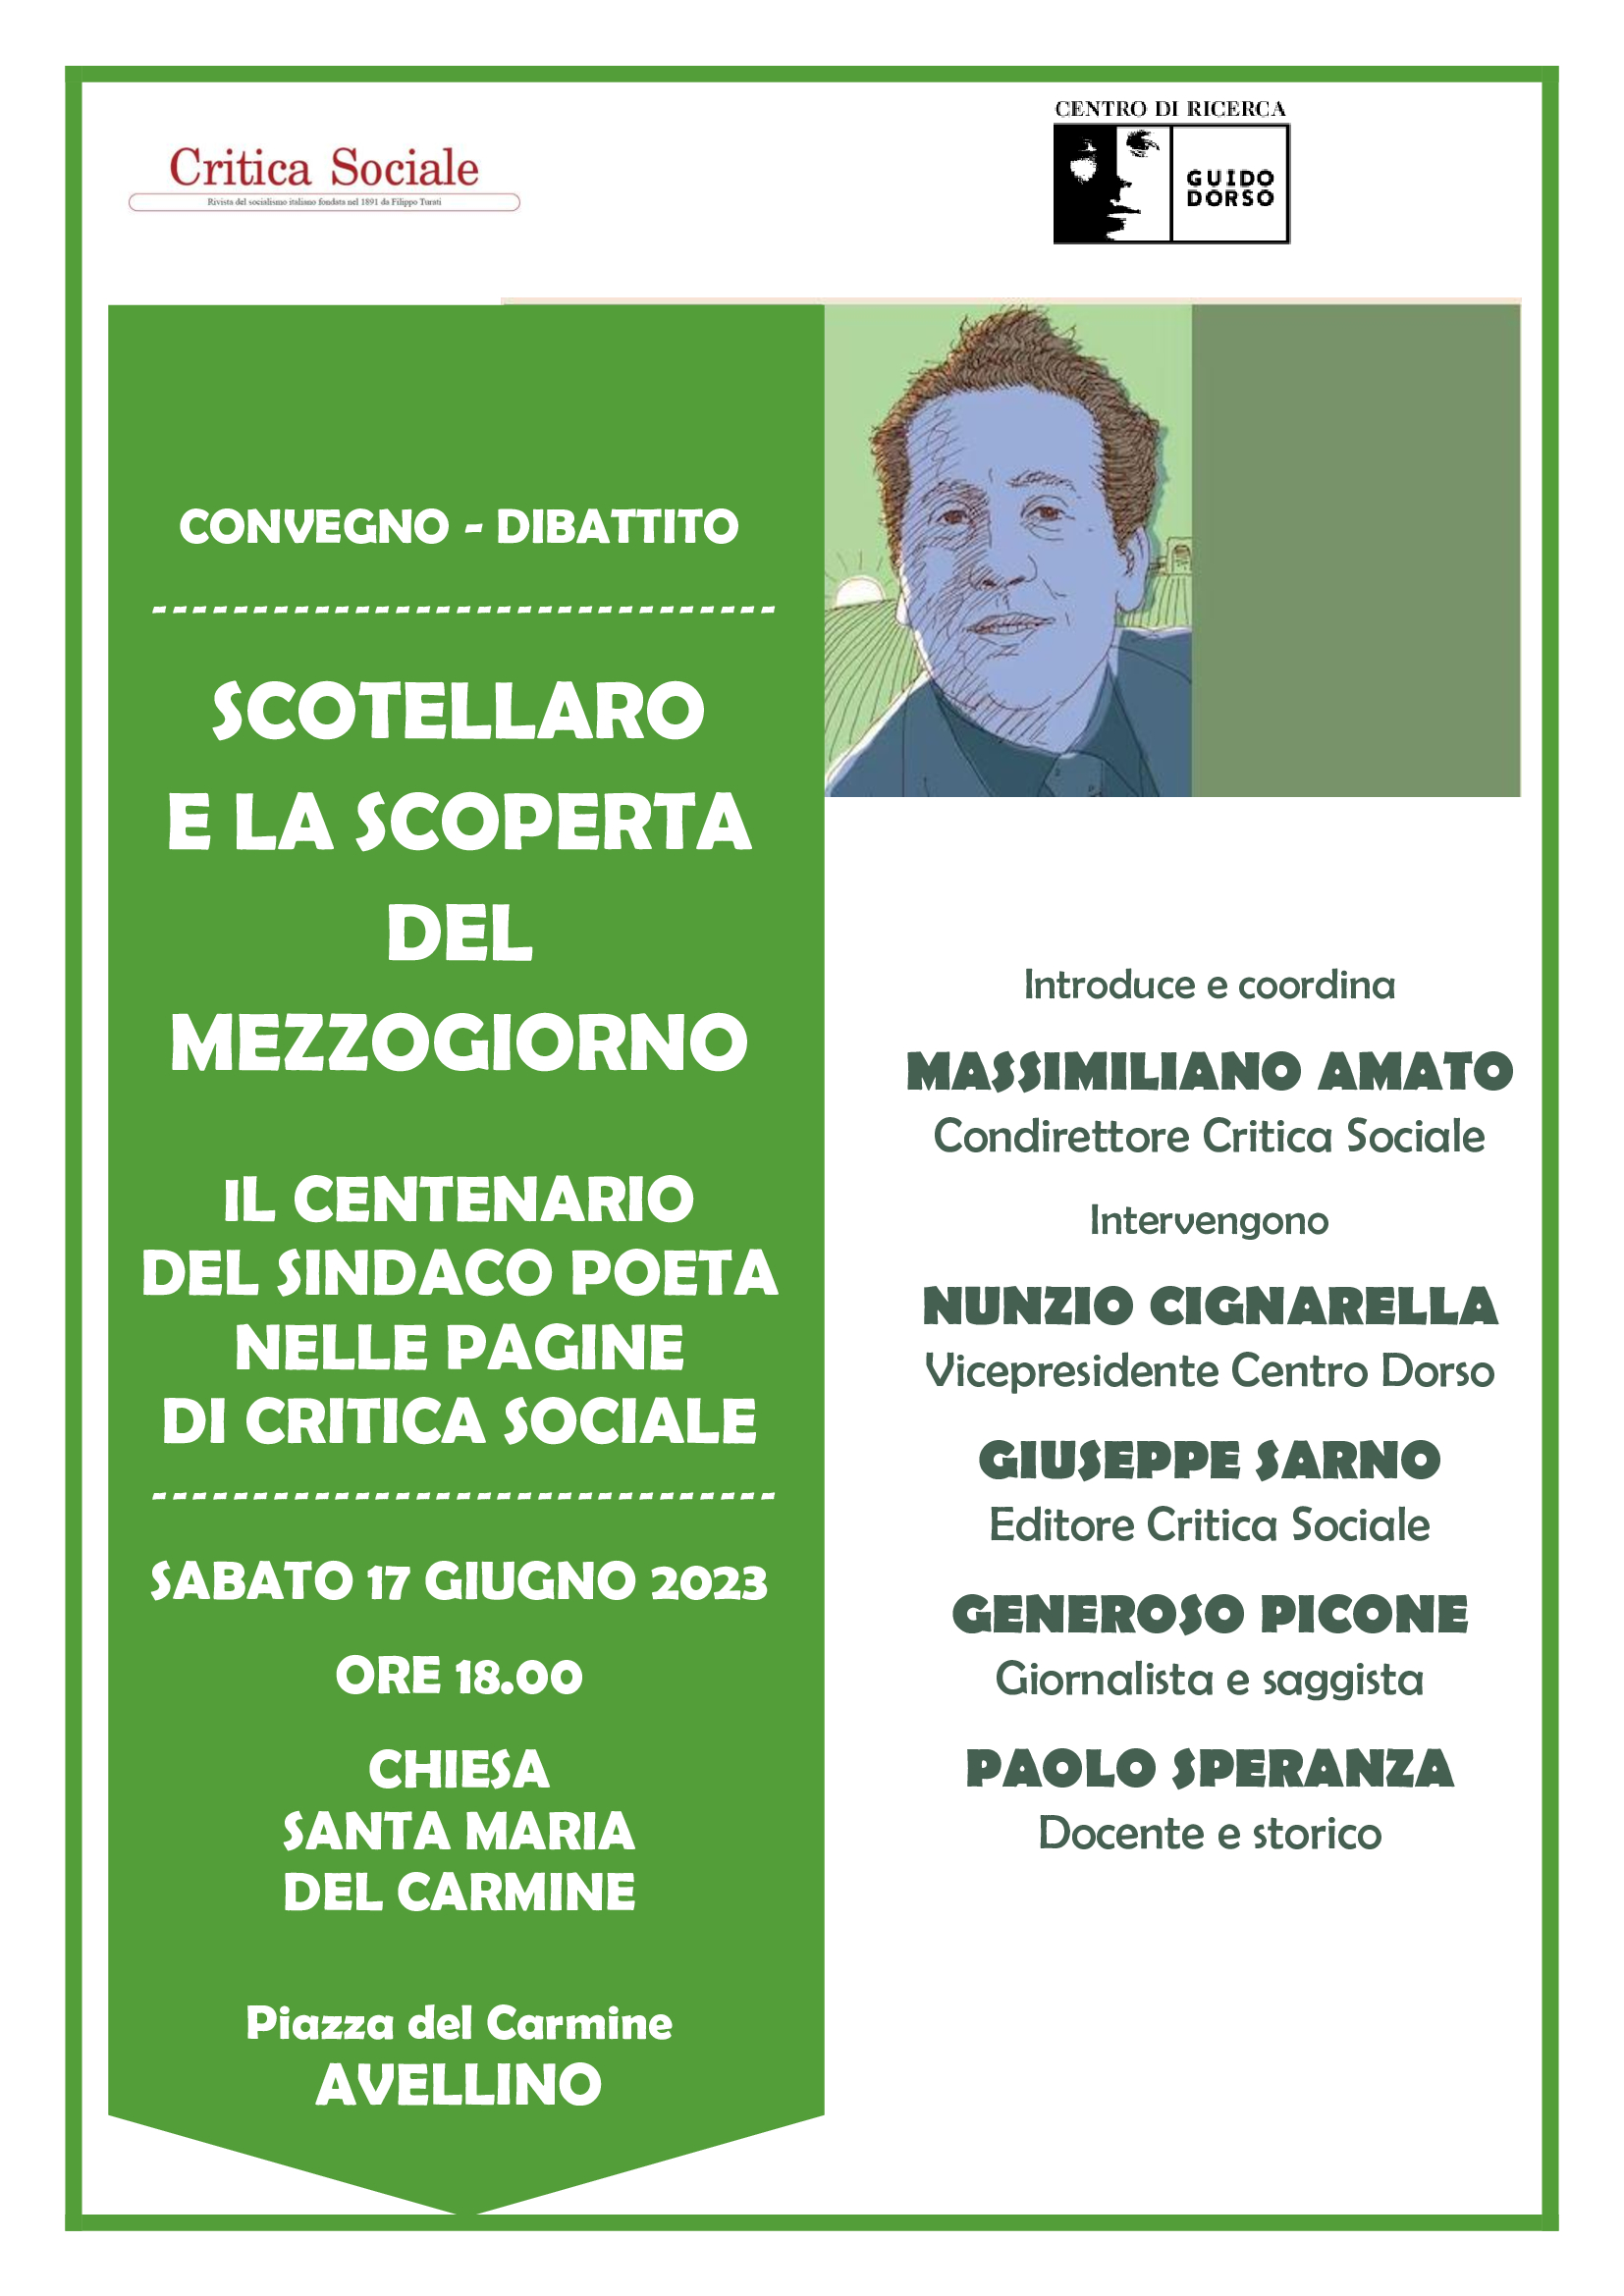 Scotellaro e la scoperta del Mezzogiono: sabato 17 giugno a Avellino